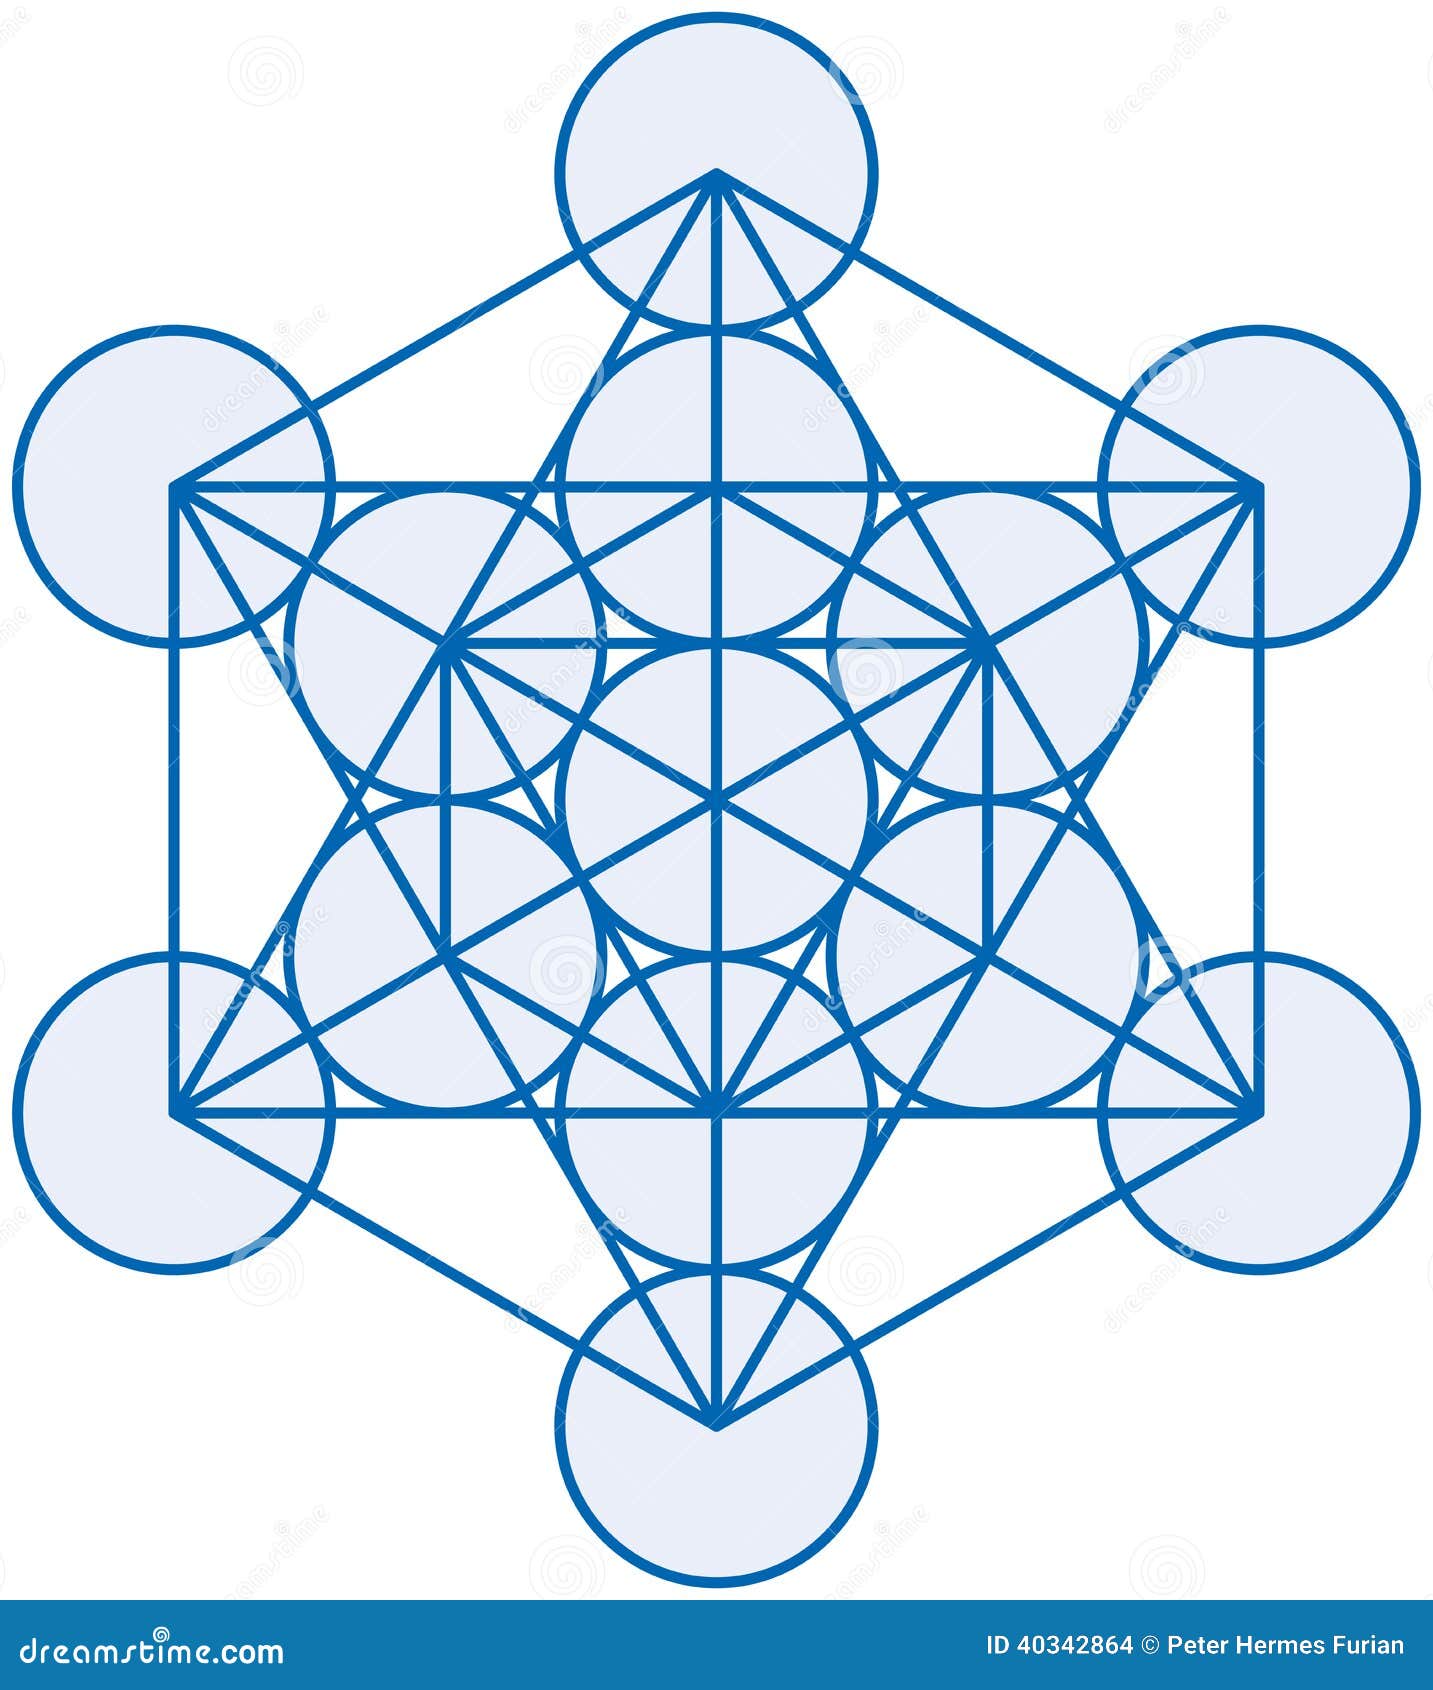 Featured image of post Imagens Do Cubo De Metatron / Cubo de metatrón (versión incompleta que no contiene coordenadas válidas para el dodecaedro o el icosaedro).